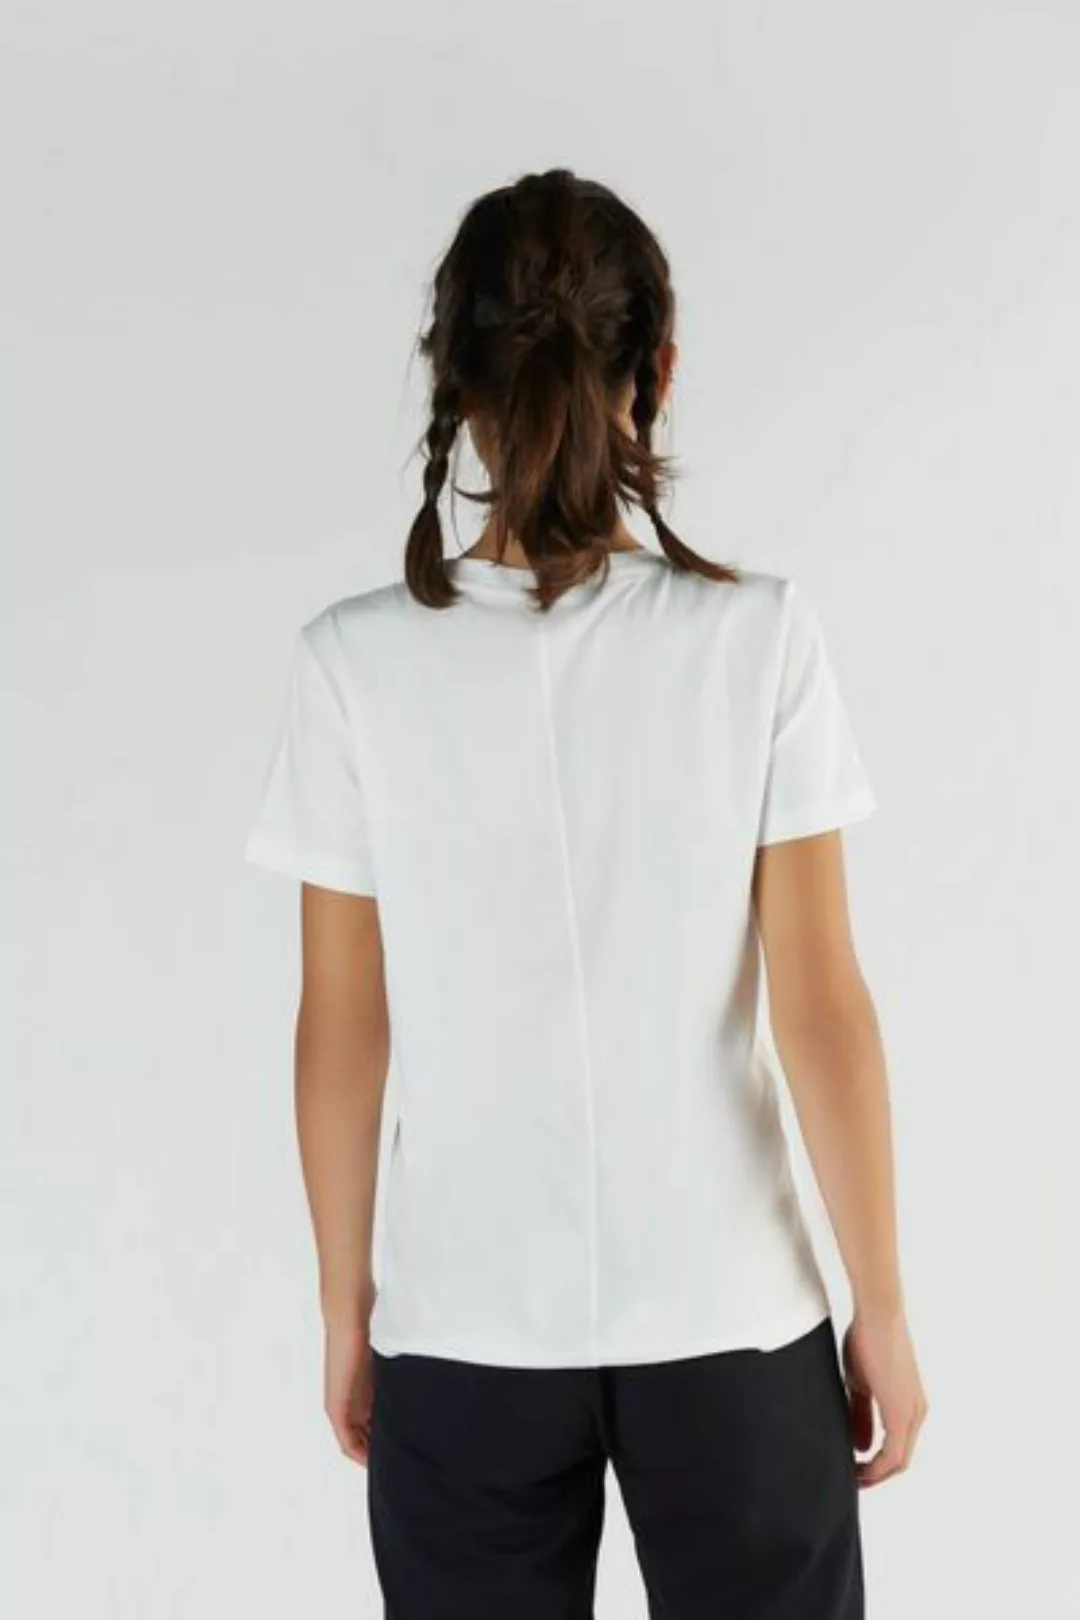 Damen T-shirt Aus Bio-baumwolle & Tencel Modal T1100 günstig online kaufen